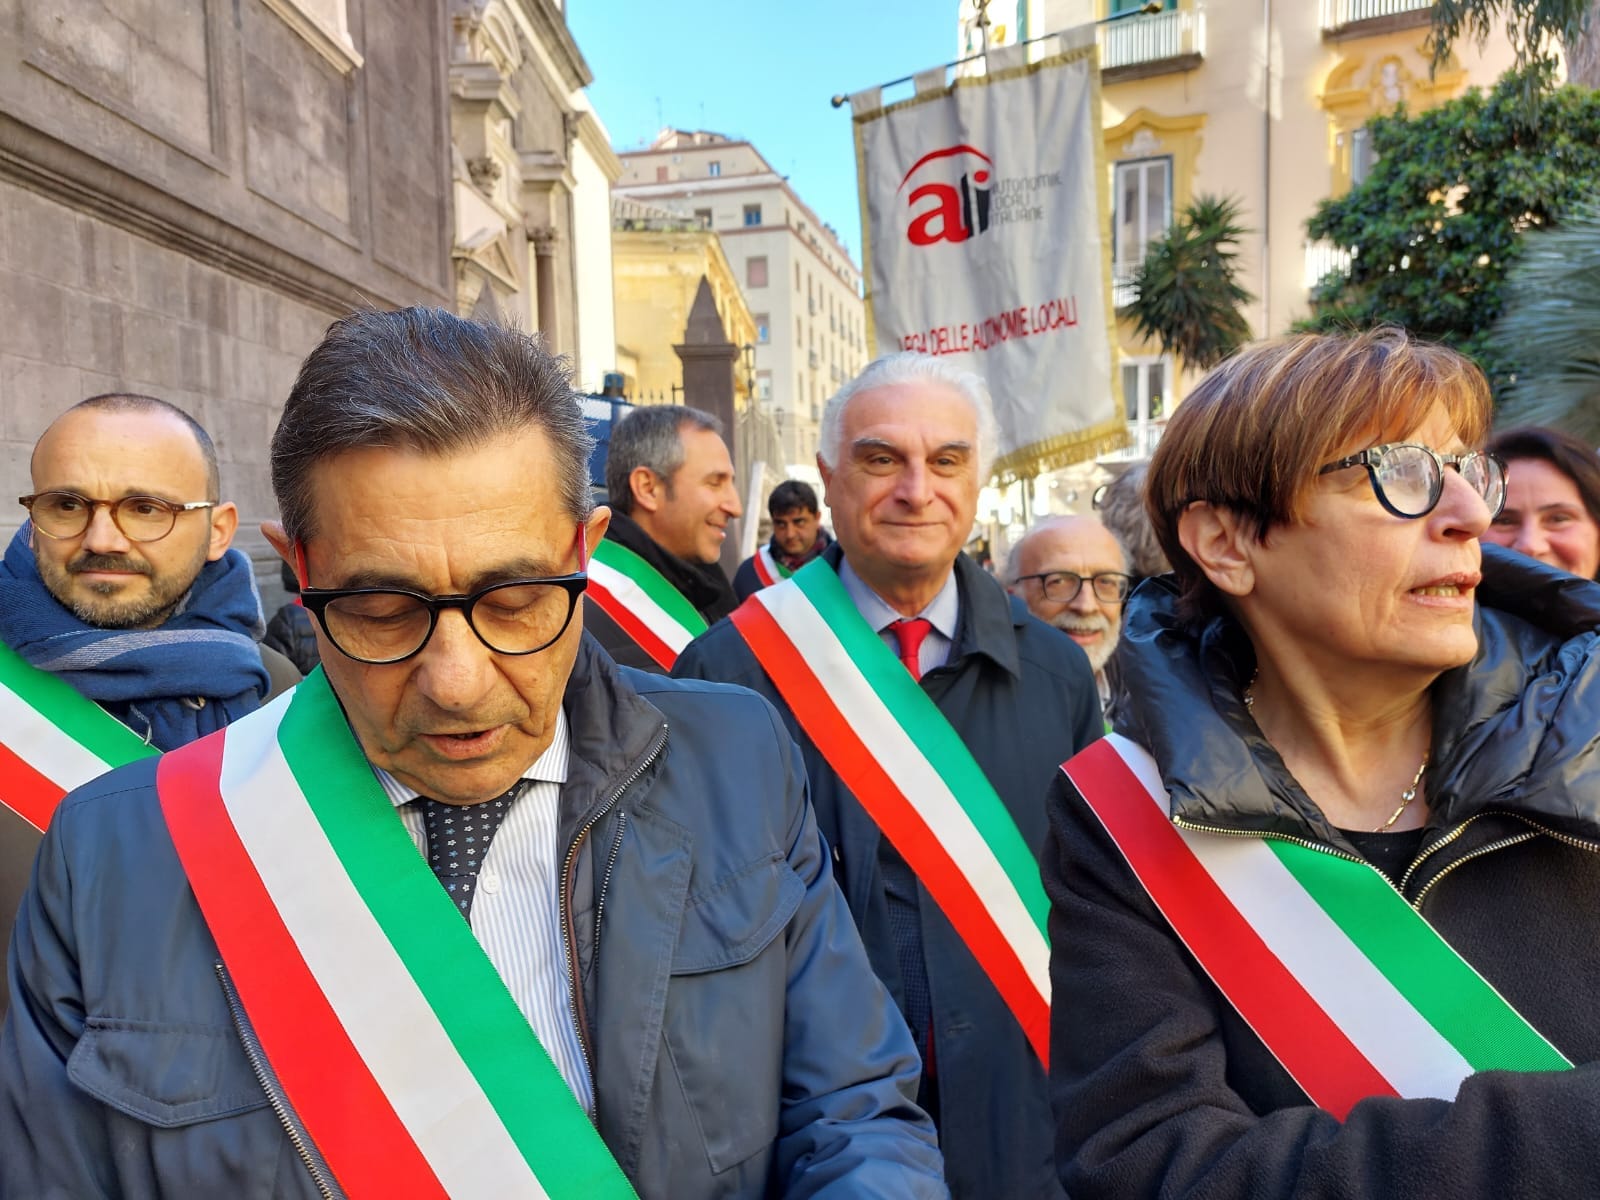 Sarno: Autonomia Differenziata, Sindaco Canfora in piazza a Napoli “No a riforma Calderoli”